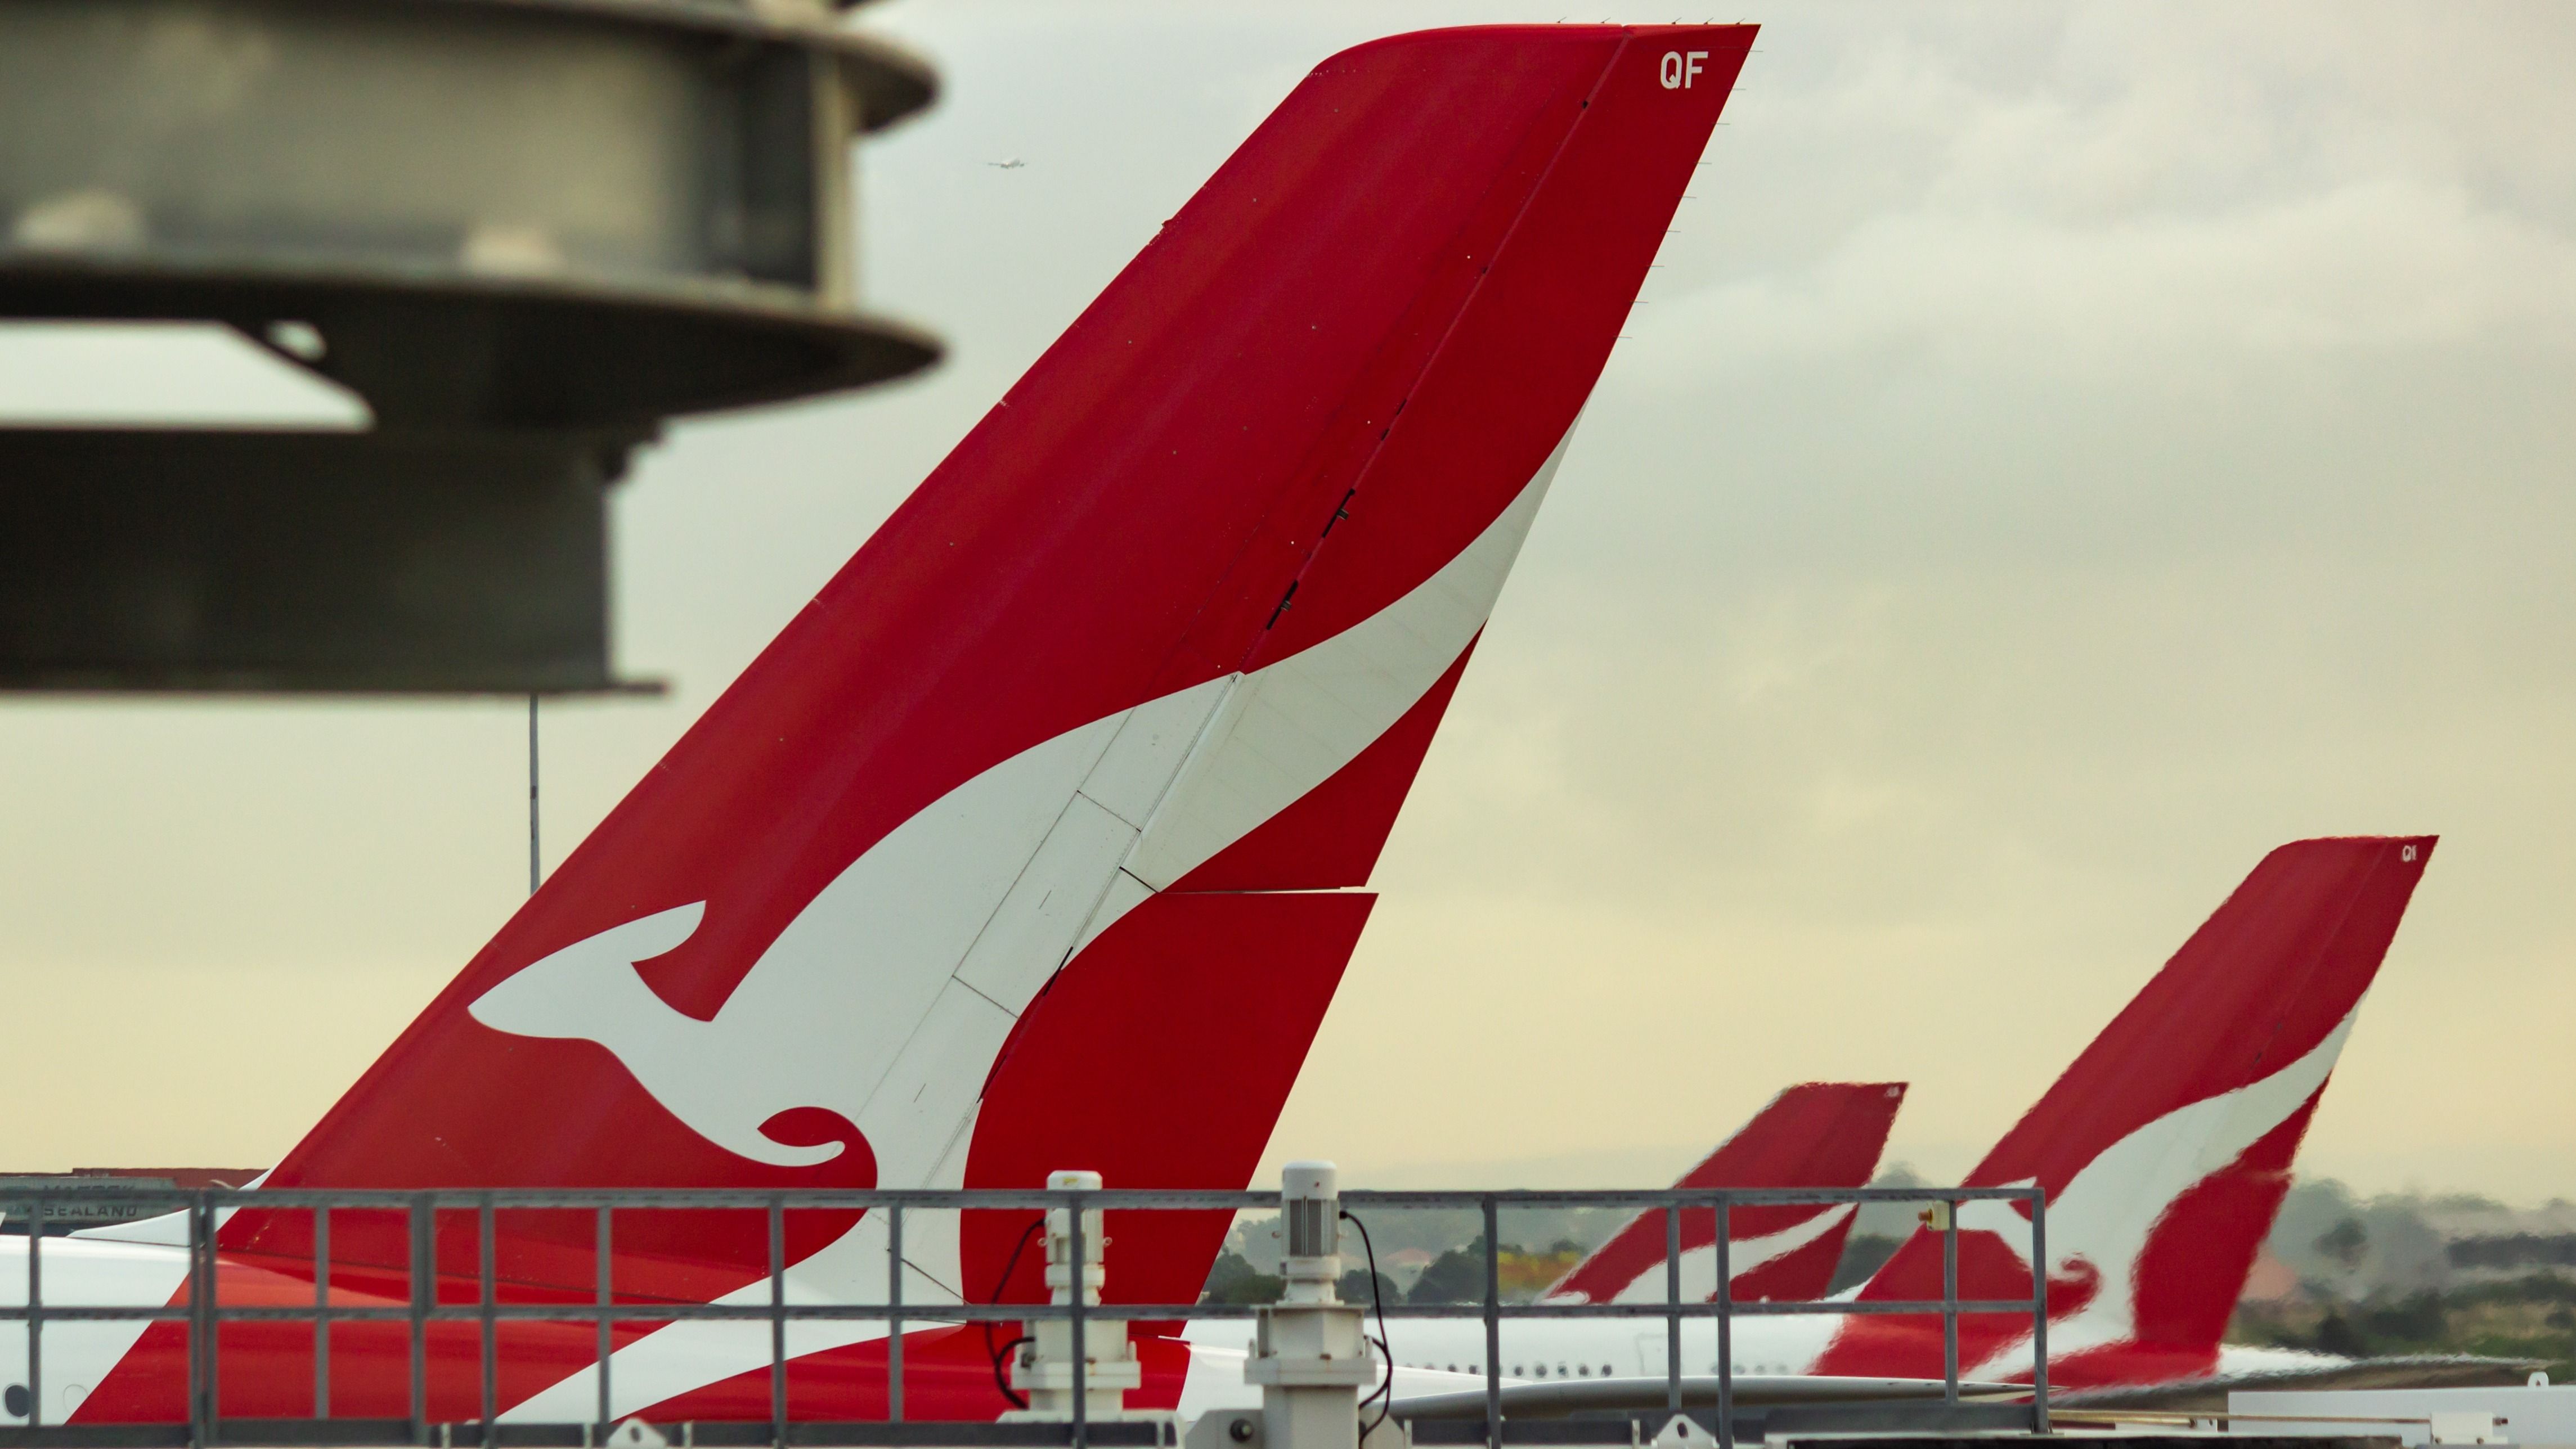 Qantas aircraft tails.